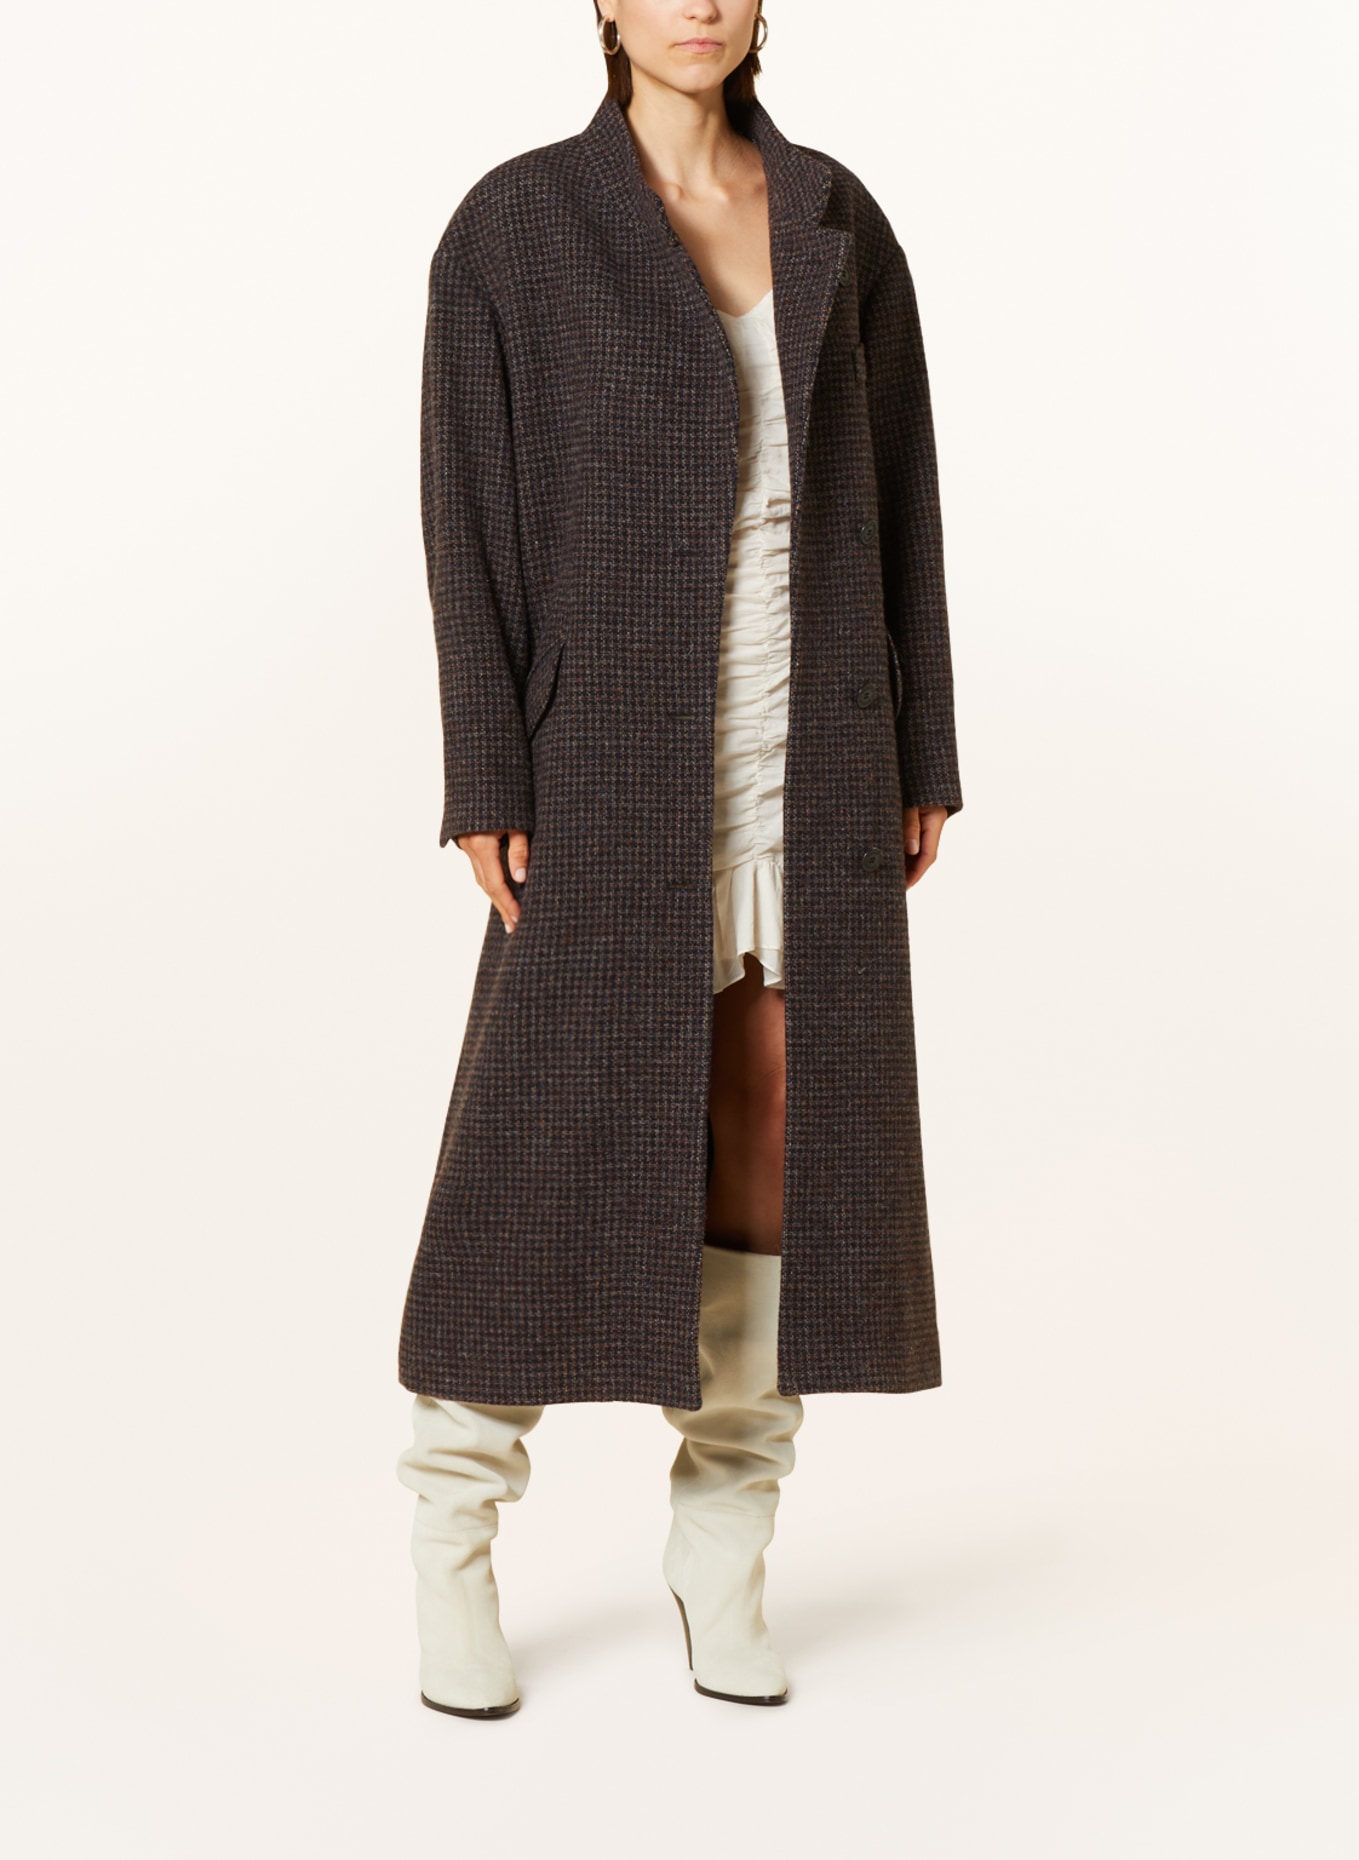 ISABEL MARANT ÉTOILE Wool coat SABINE in brown/ dark blue/ light brown